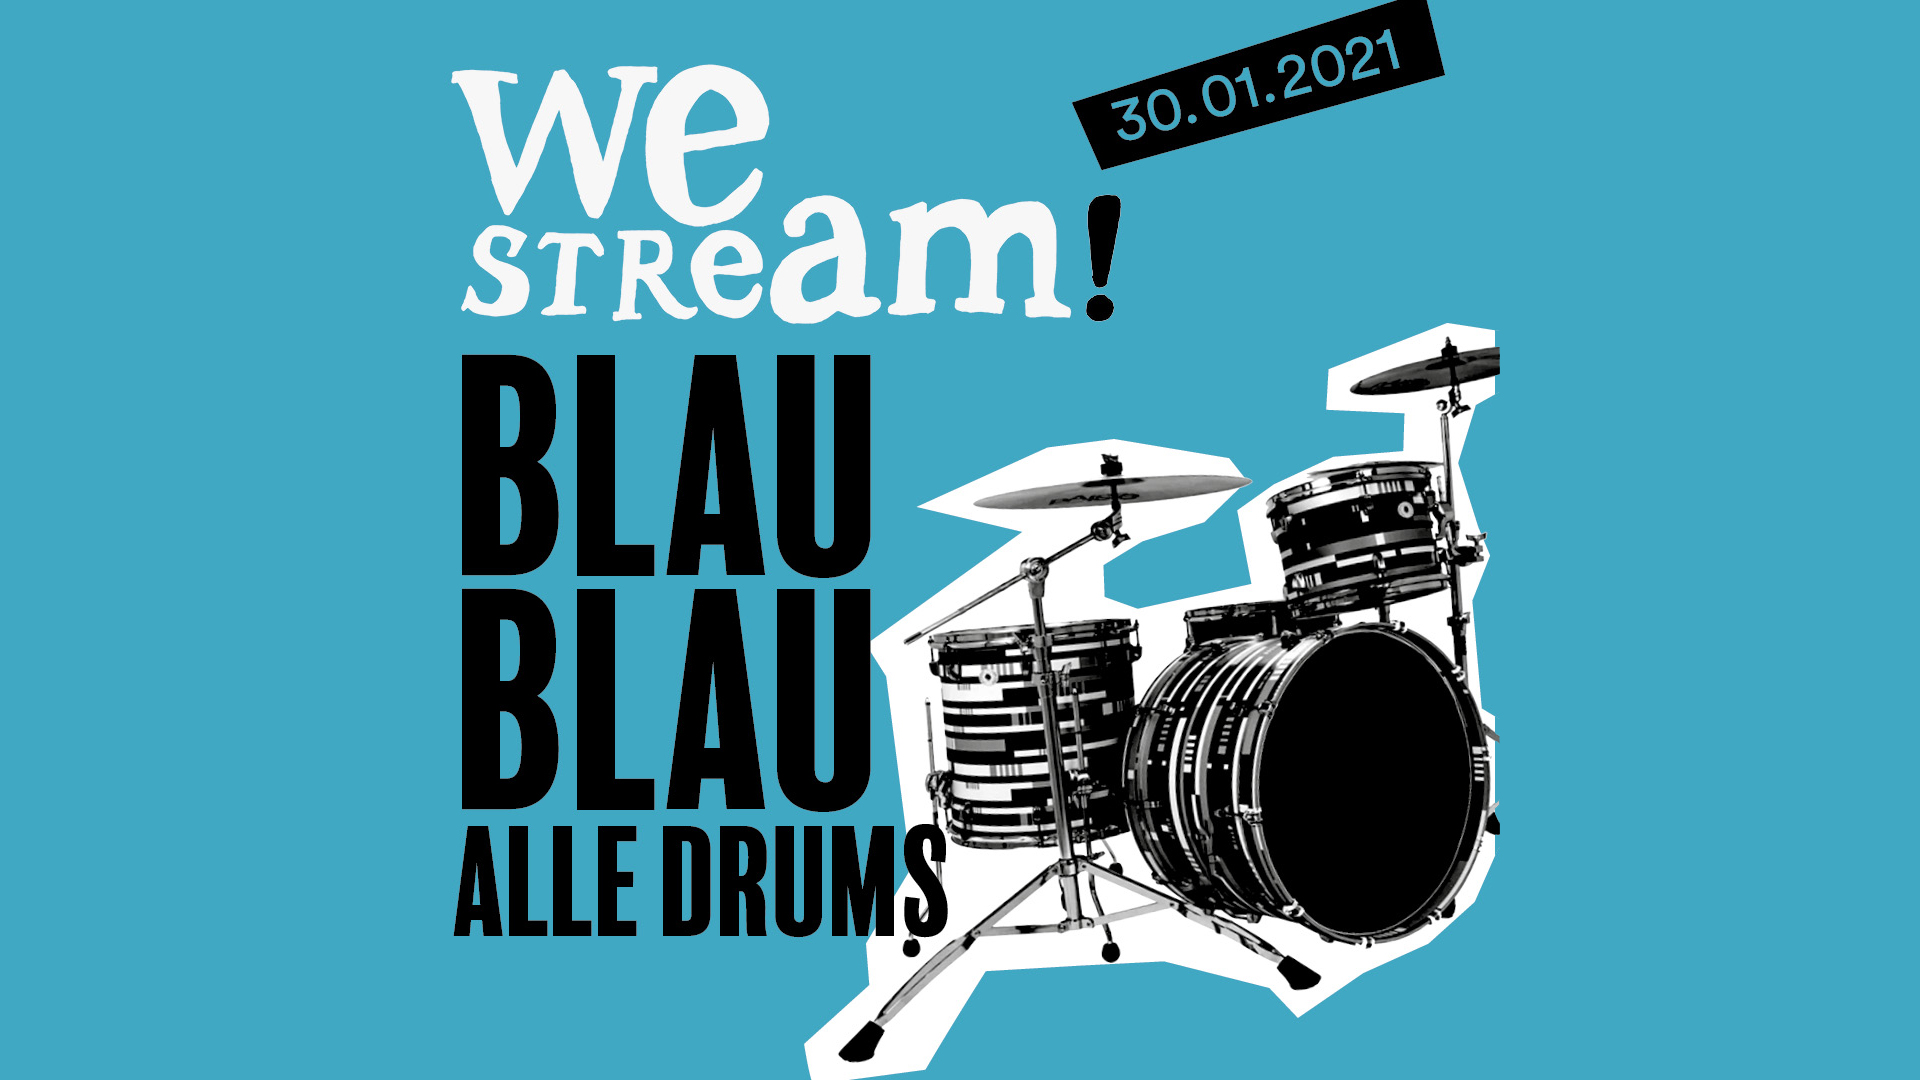 BlauBlau Alle Drums